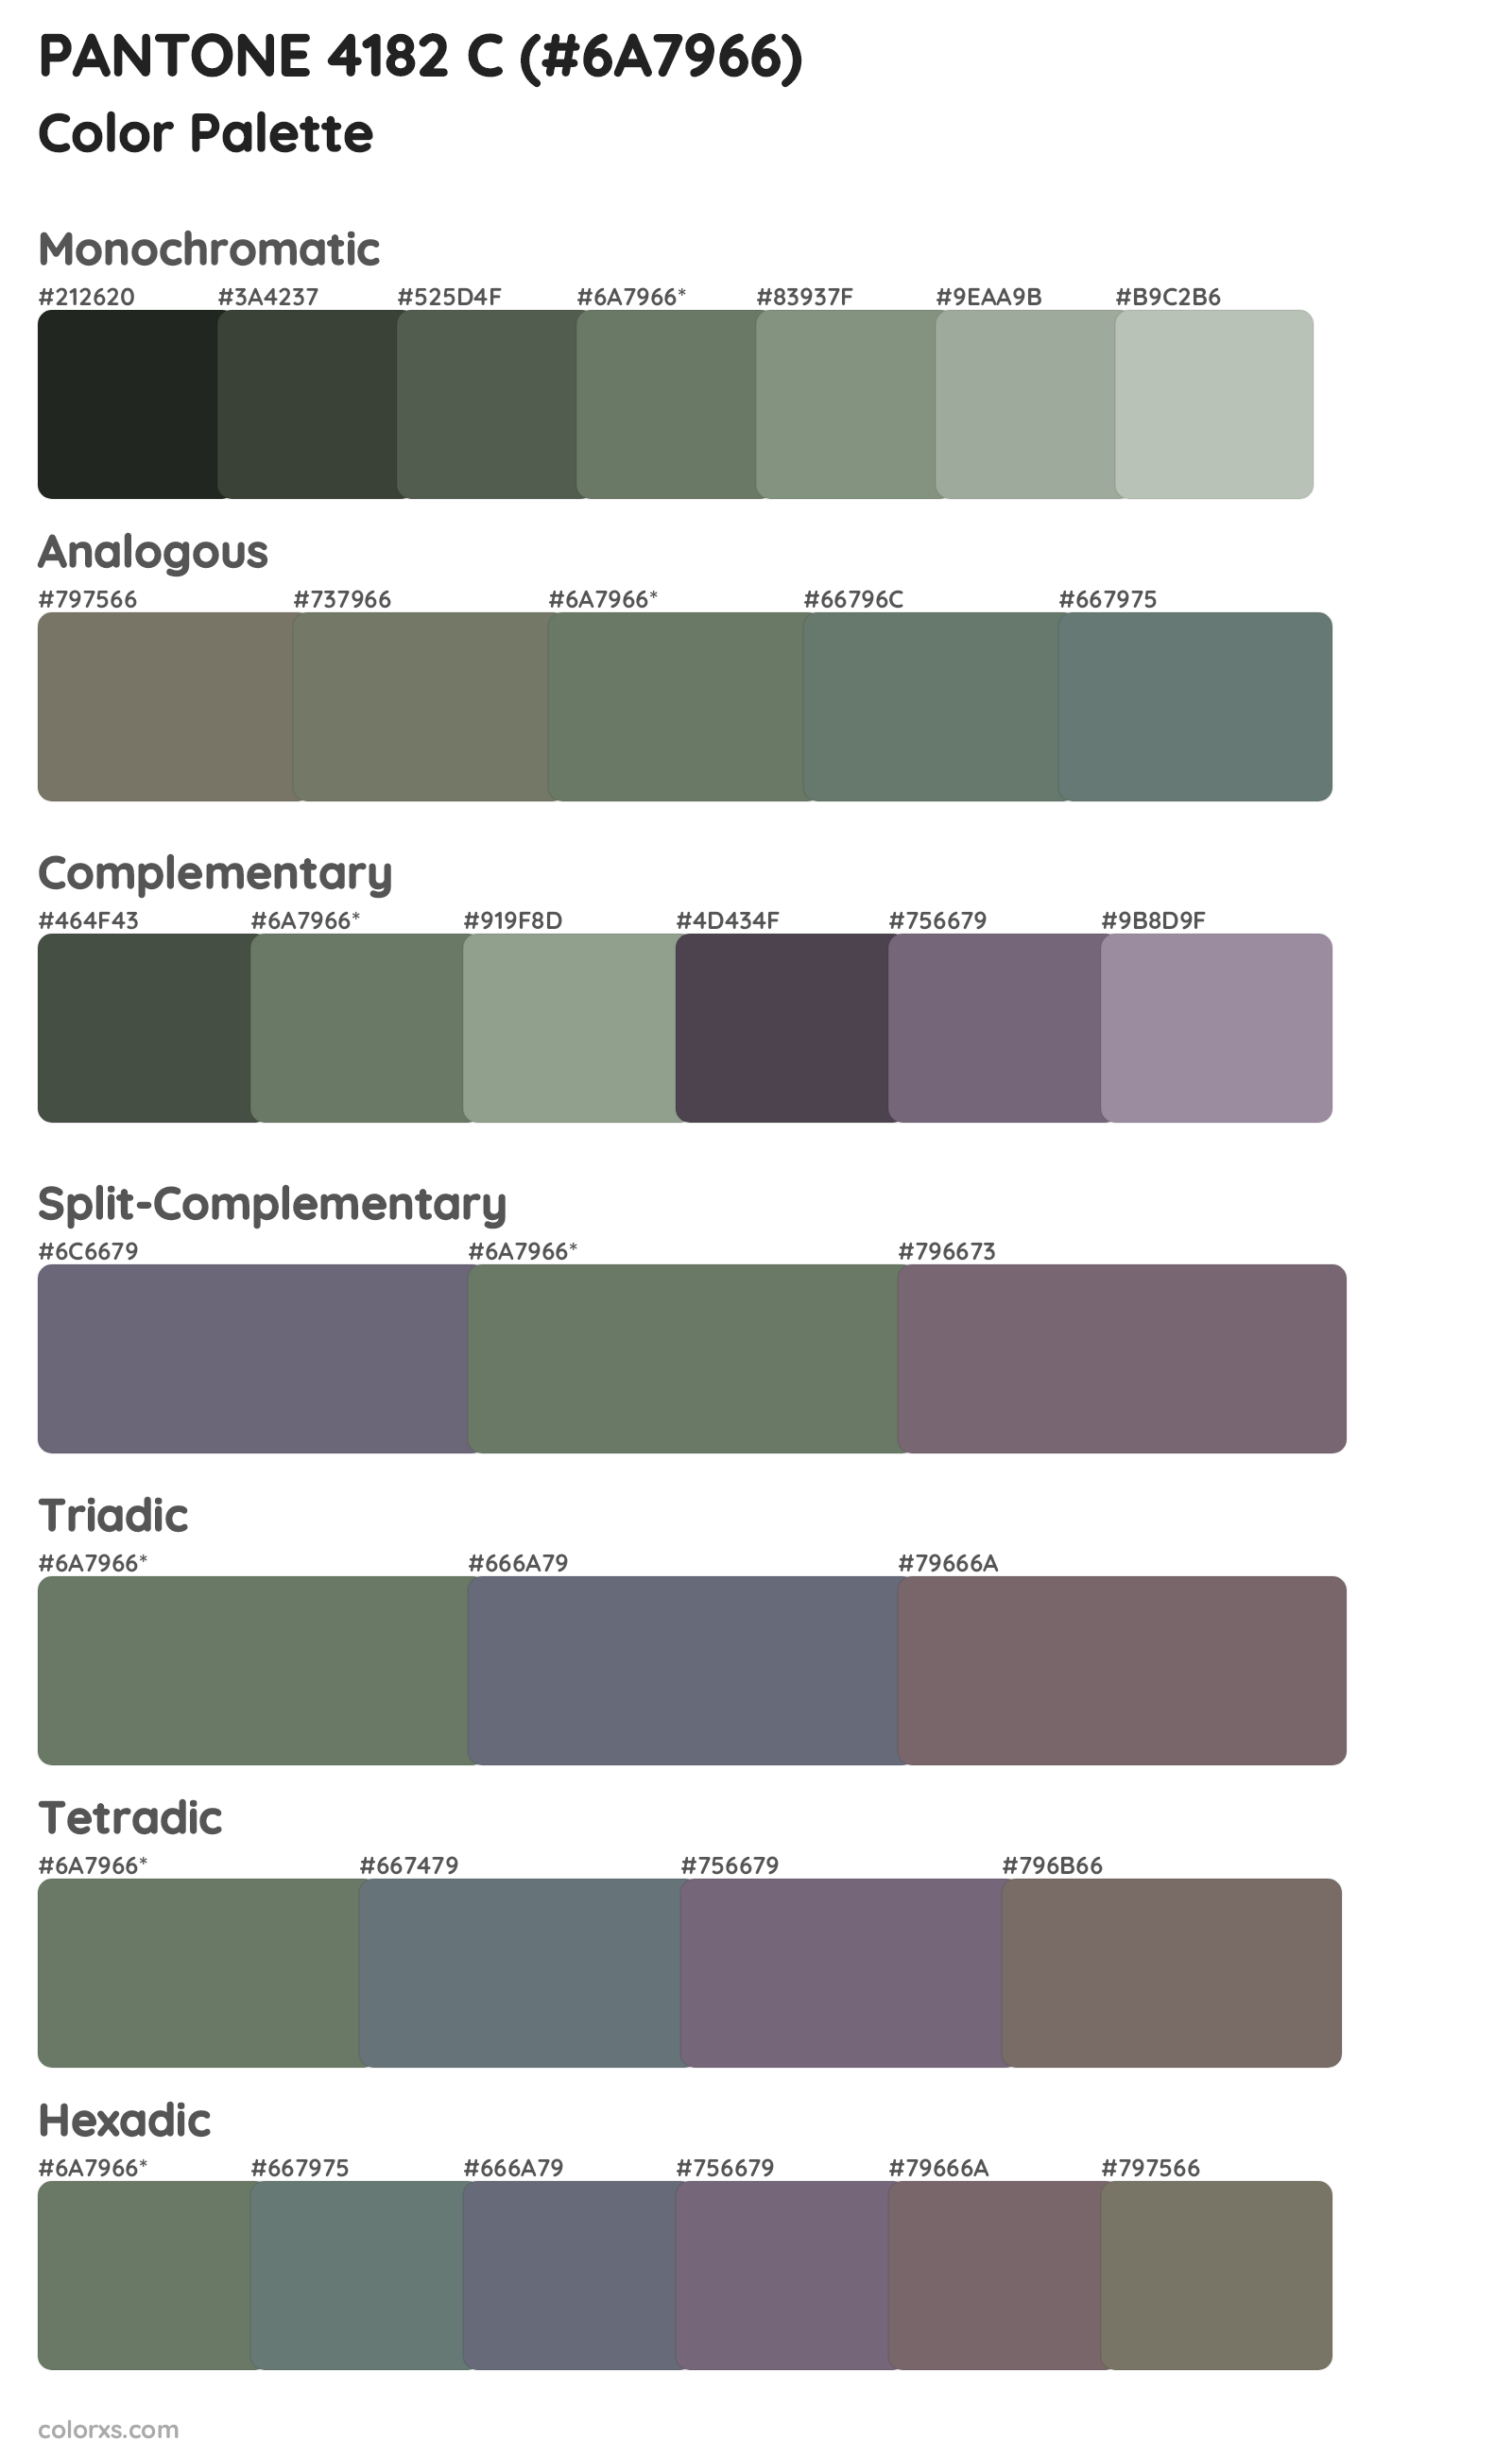 PANTONE 4182 C Color Scheme Palettes